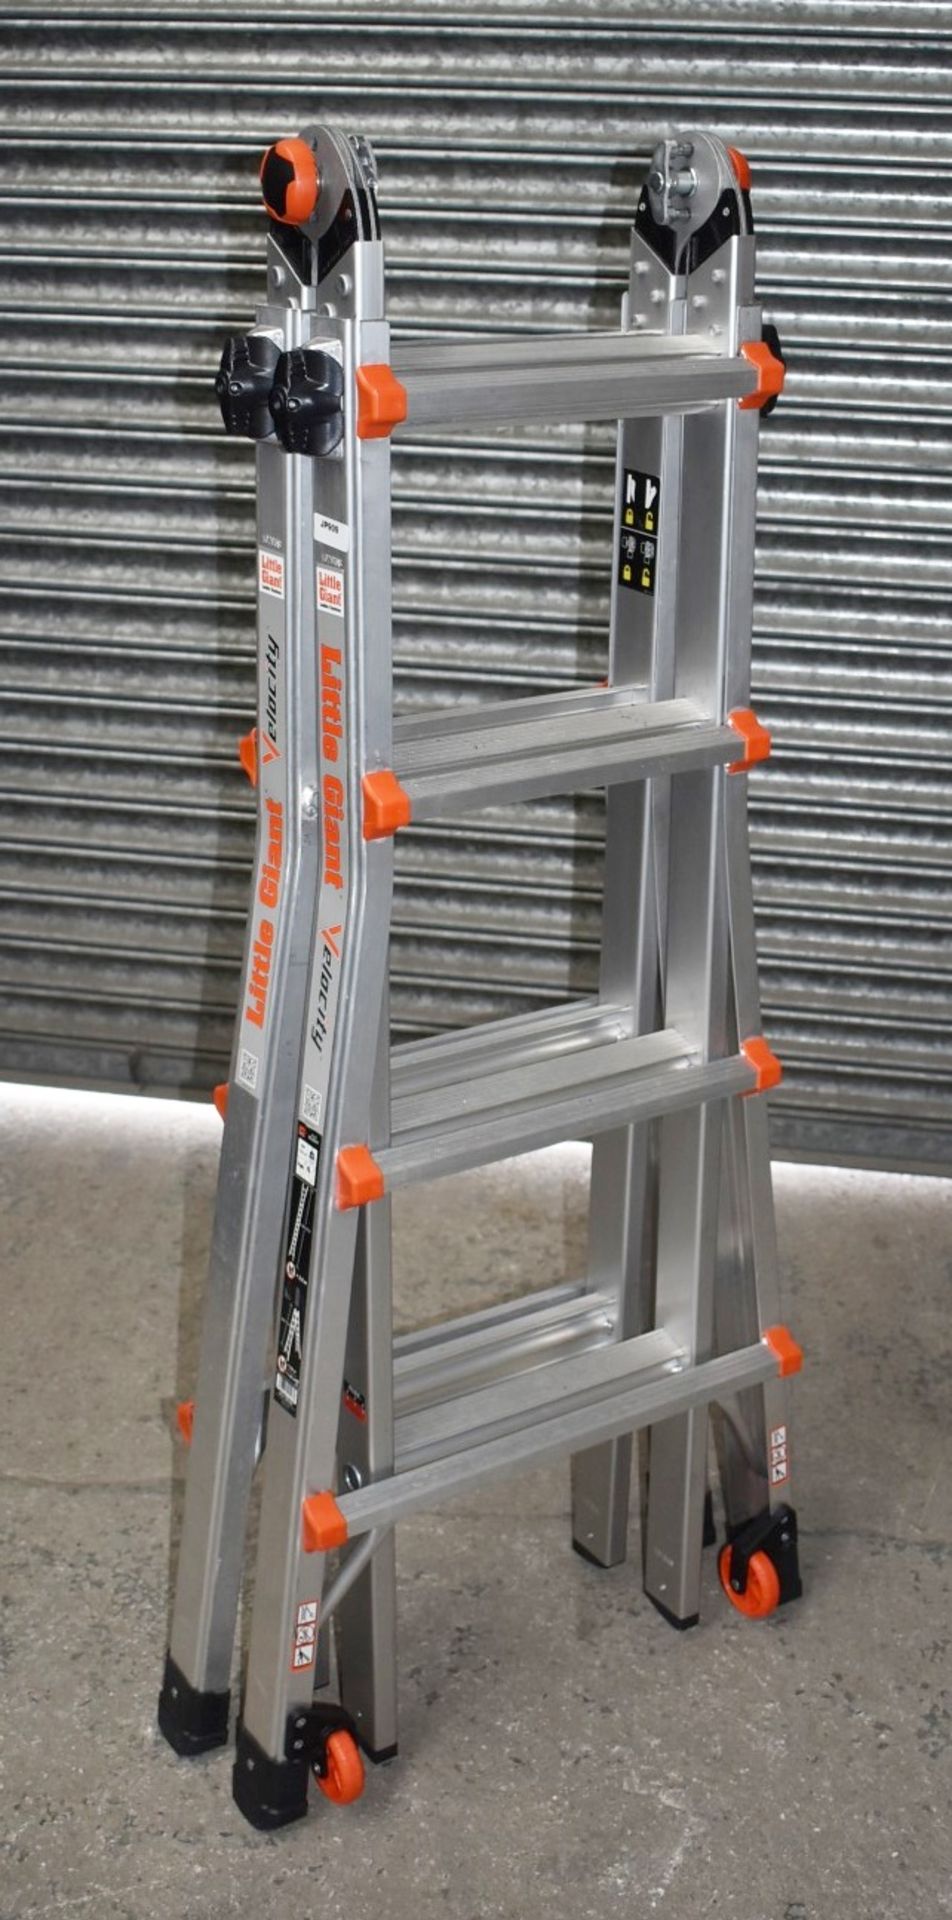 1 x Little Giant 4 Step Multipurpose Velocity Ladder - Type 15417EN - Ref: JP909 GITW - CL732 - - Image 7 of 15